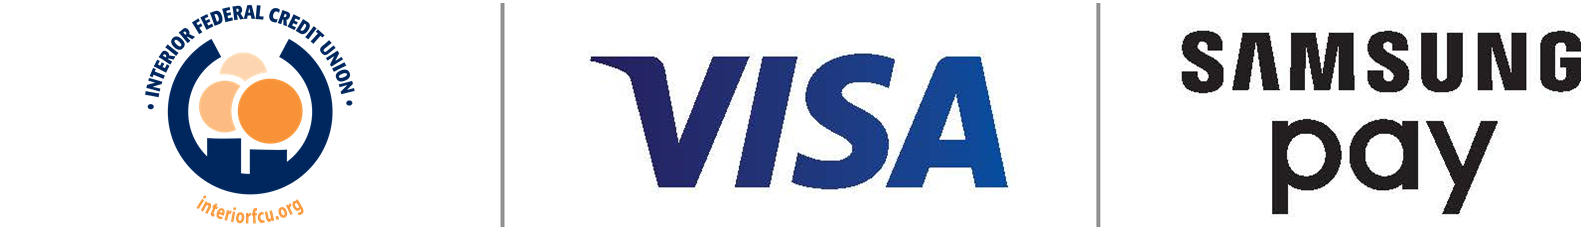 visa/samsung pay header